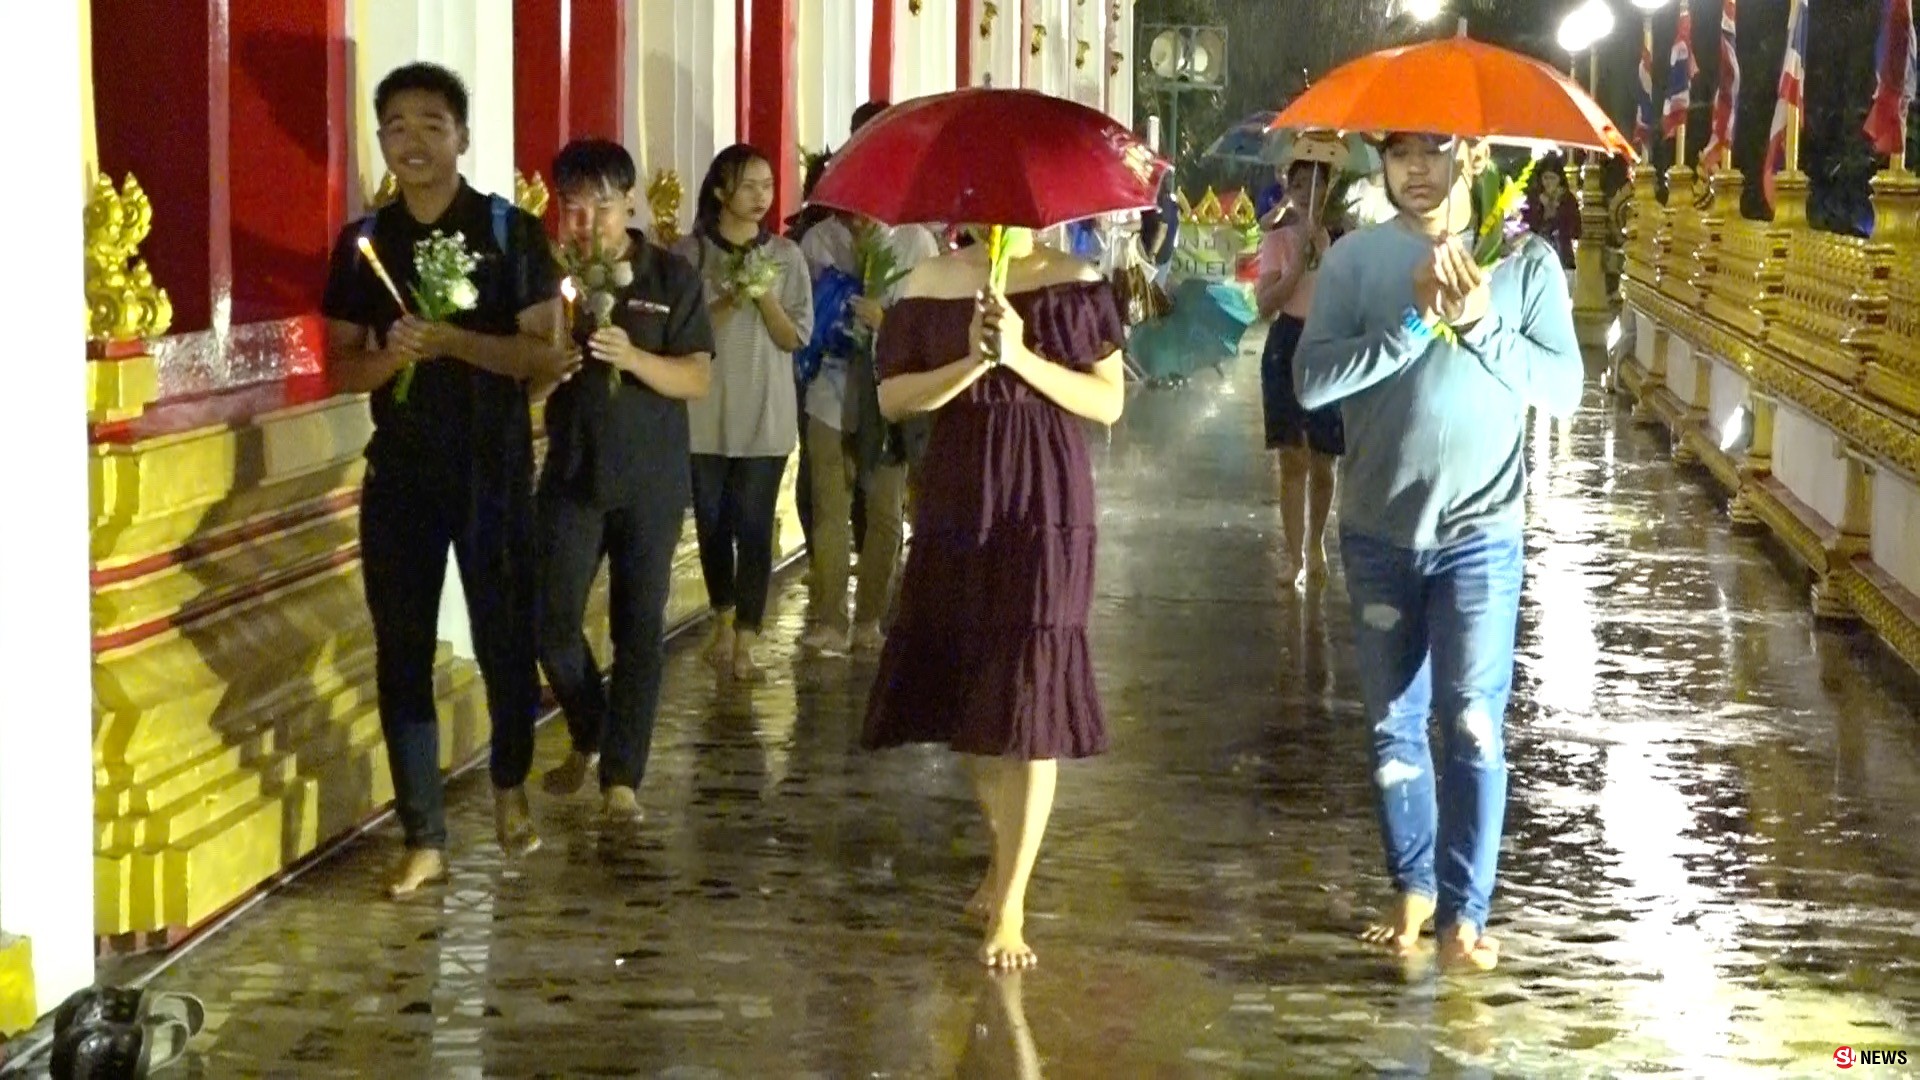 ลุยฝน! พุทธศาสนิกชนร่วมเวียนเทียนวันวิสาขบูชา แม้ฝนจะตกแต่ไม่เป็นอุปสรรค